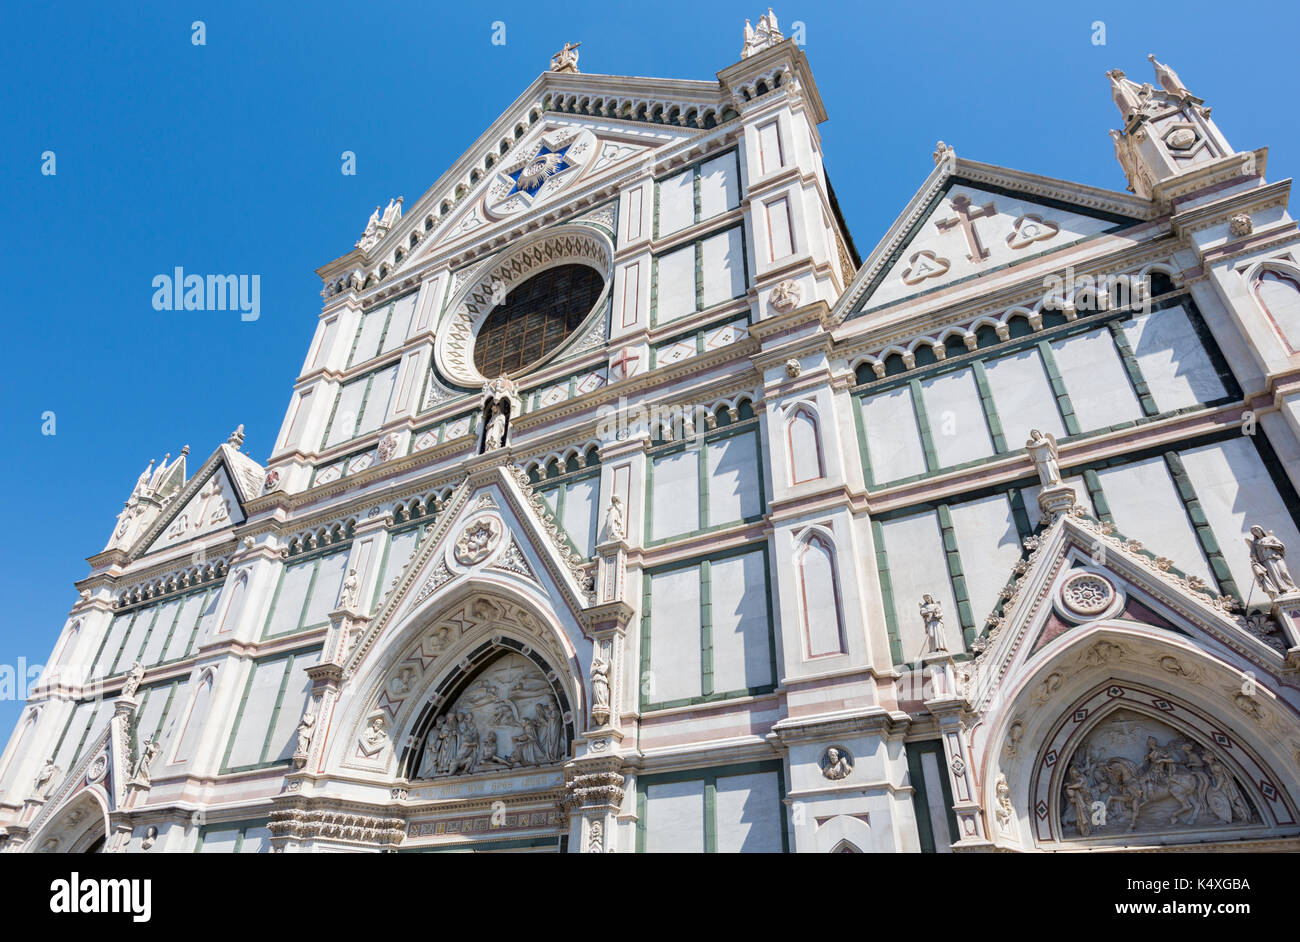 Firenze, provincia di Firenze, Toscana, Italia. La chiesa di santa croce. Il centro storico di Firenze è un sito patrimonio mondiale dell'UNESCO. Foto Stock